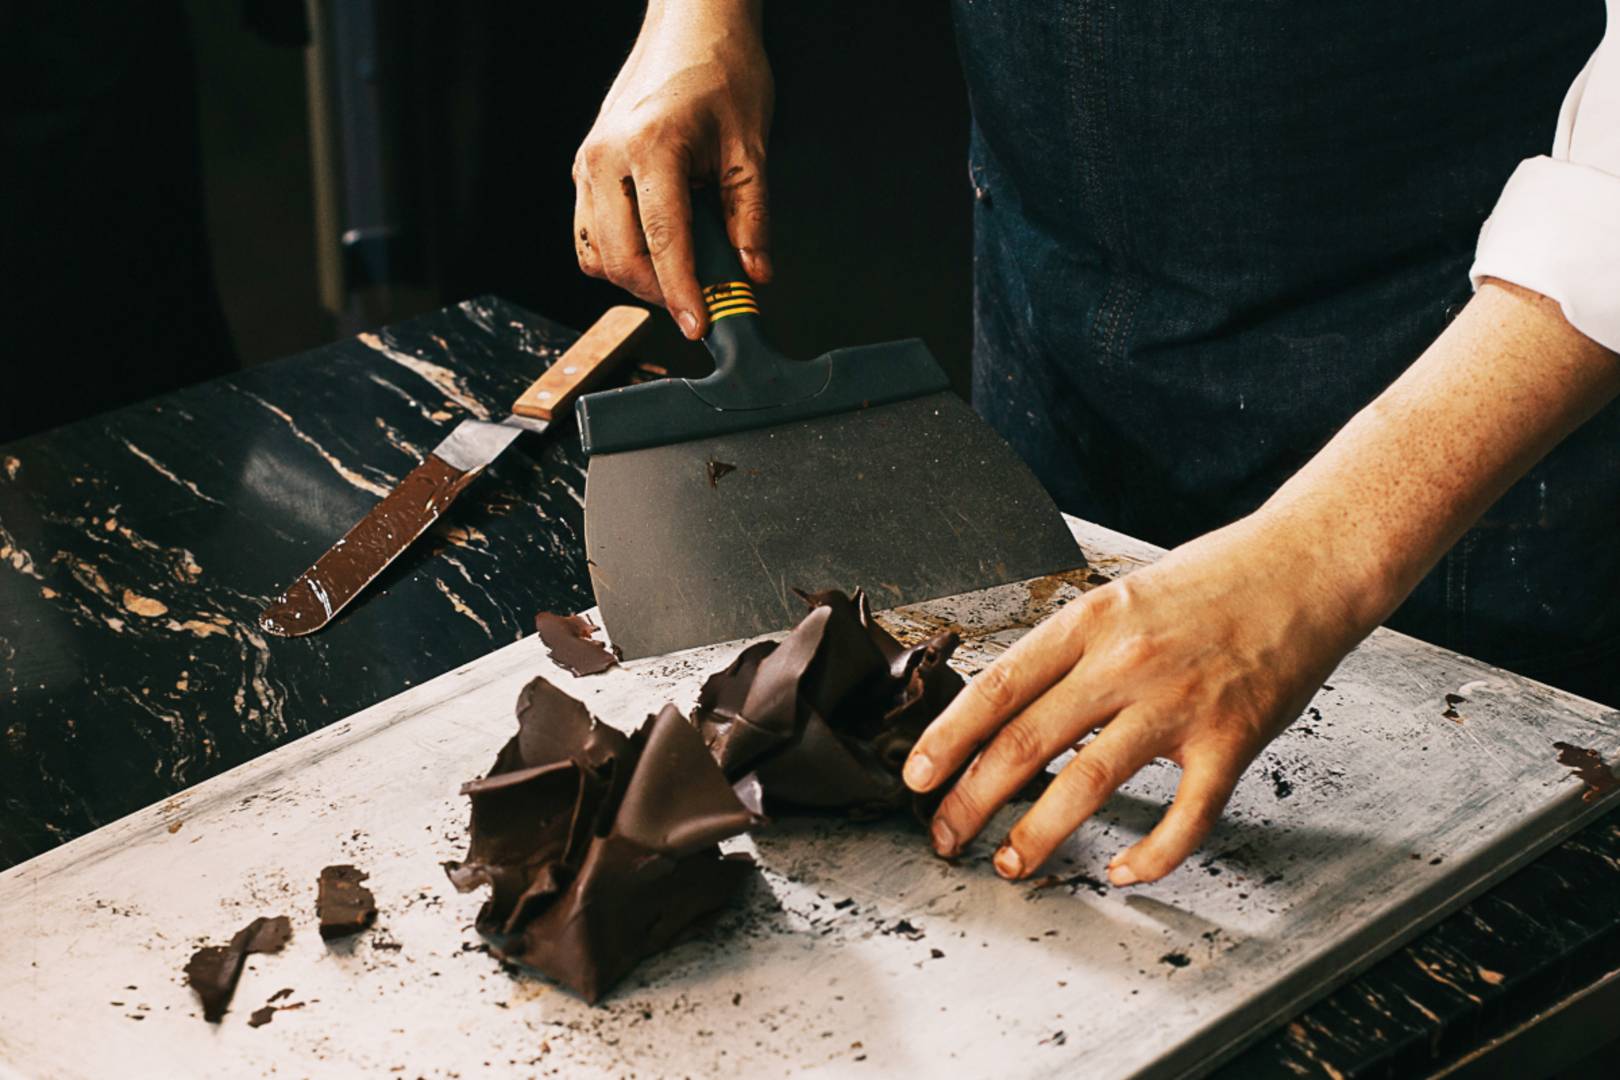 Elképesztő csokiszobrok egy francia cukrásztól: használati tárgyként sem utolsók